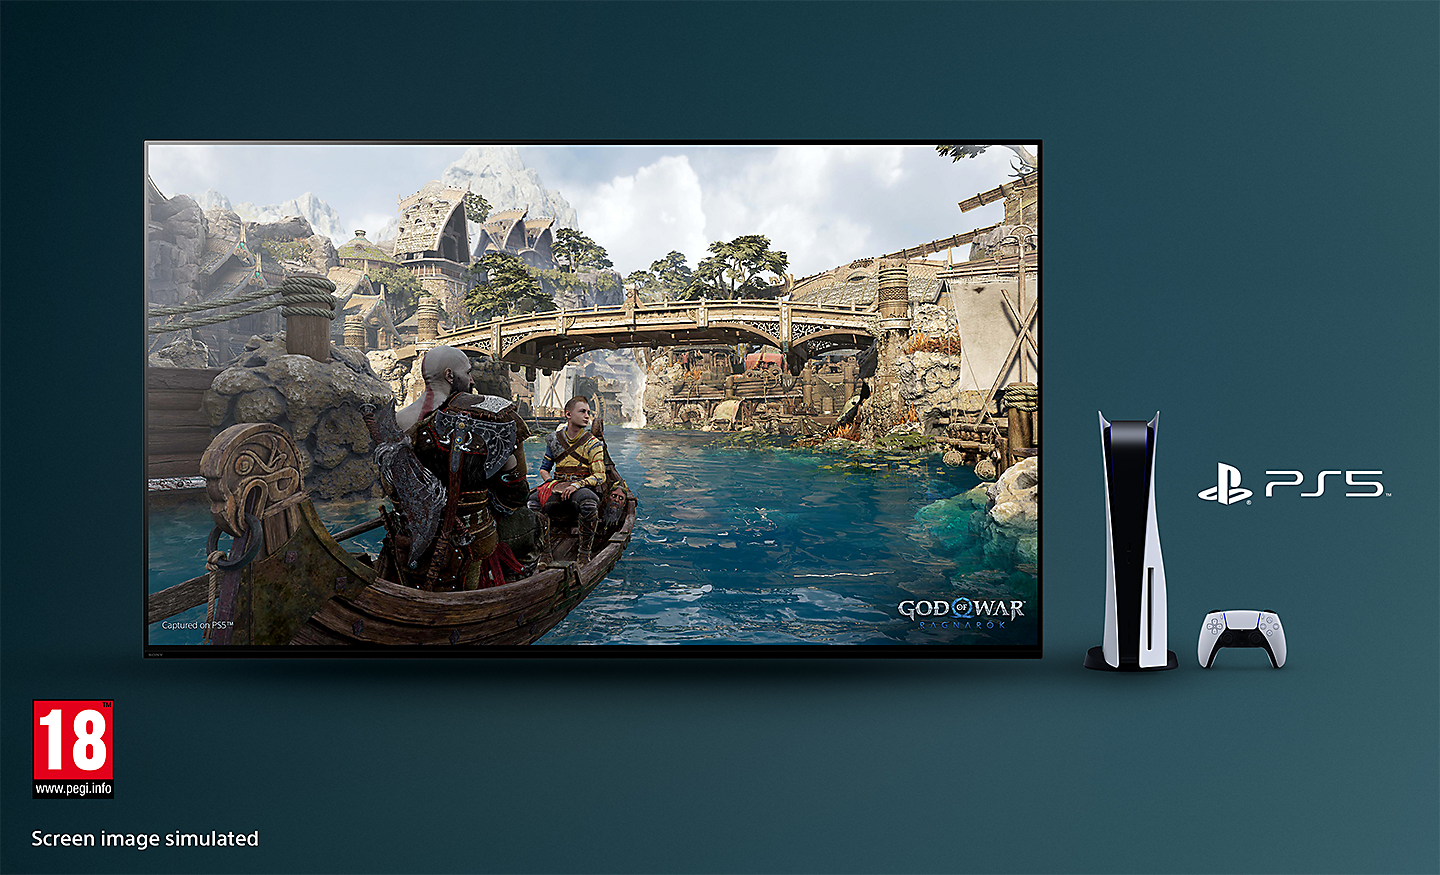 BRAVIA televízió képernyőképpel a God of War: Ragnarök című játékból, amelyen egy csónak látható egy folyón, a háttérben egy híddal; a tévétől jobbra egy PS5™ konzol, egy kontroller és a PS5™ logója, a jobb alsó sarokban pedig PEGI 18 logó